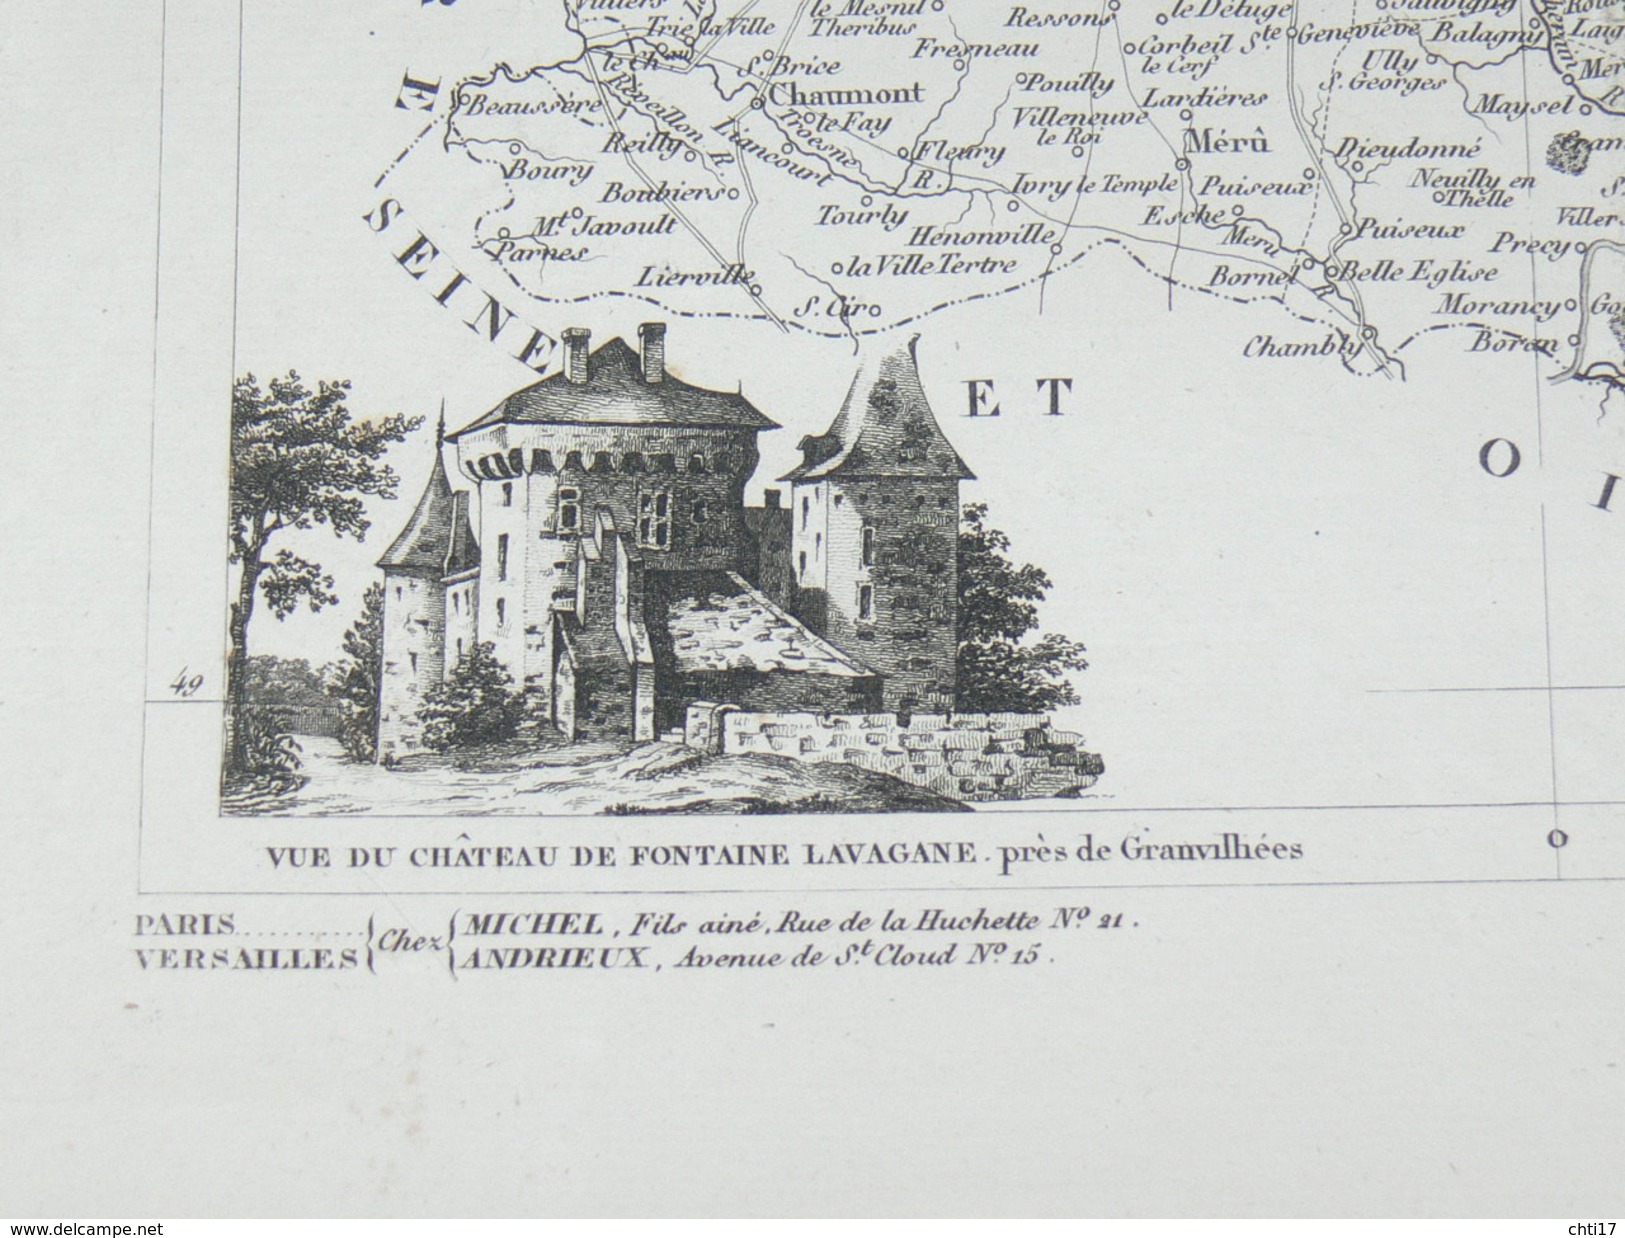 ATLAS DEPARTEMENTAL / 1830 / 1 CARTE"  OISE "  BEAUVAIS CLERMONT SENLIS COMPIEGNE / EDITEURS ANDRIEUX ET BARRESWILL - Cartes Géographiques